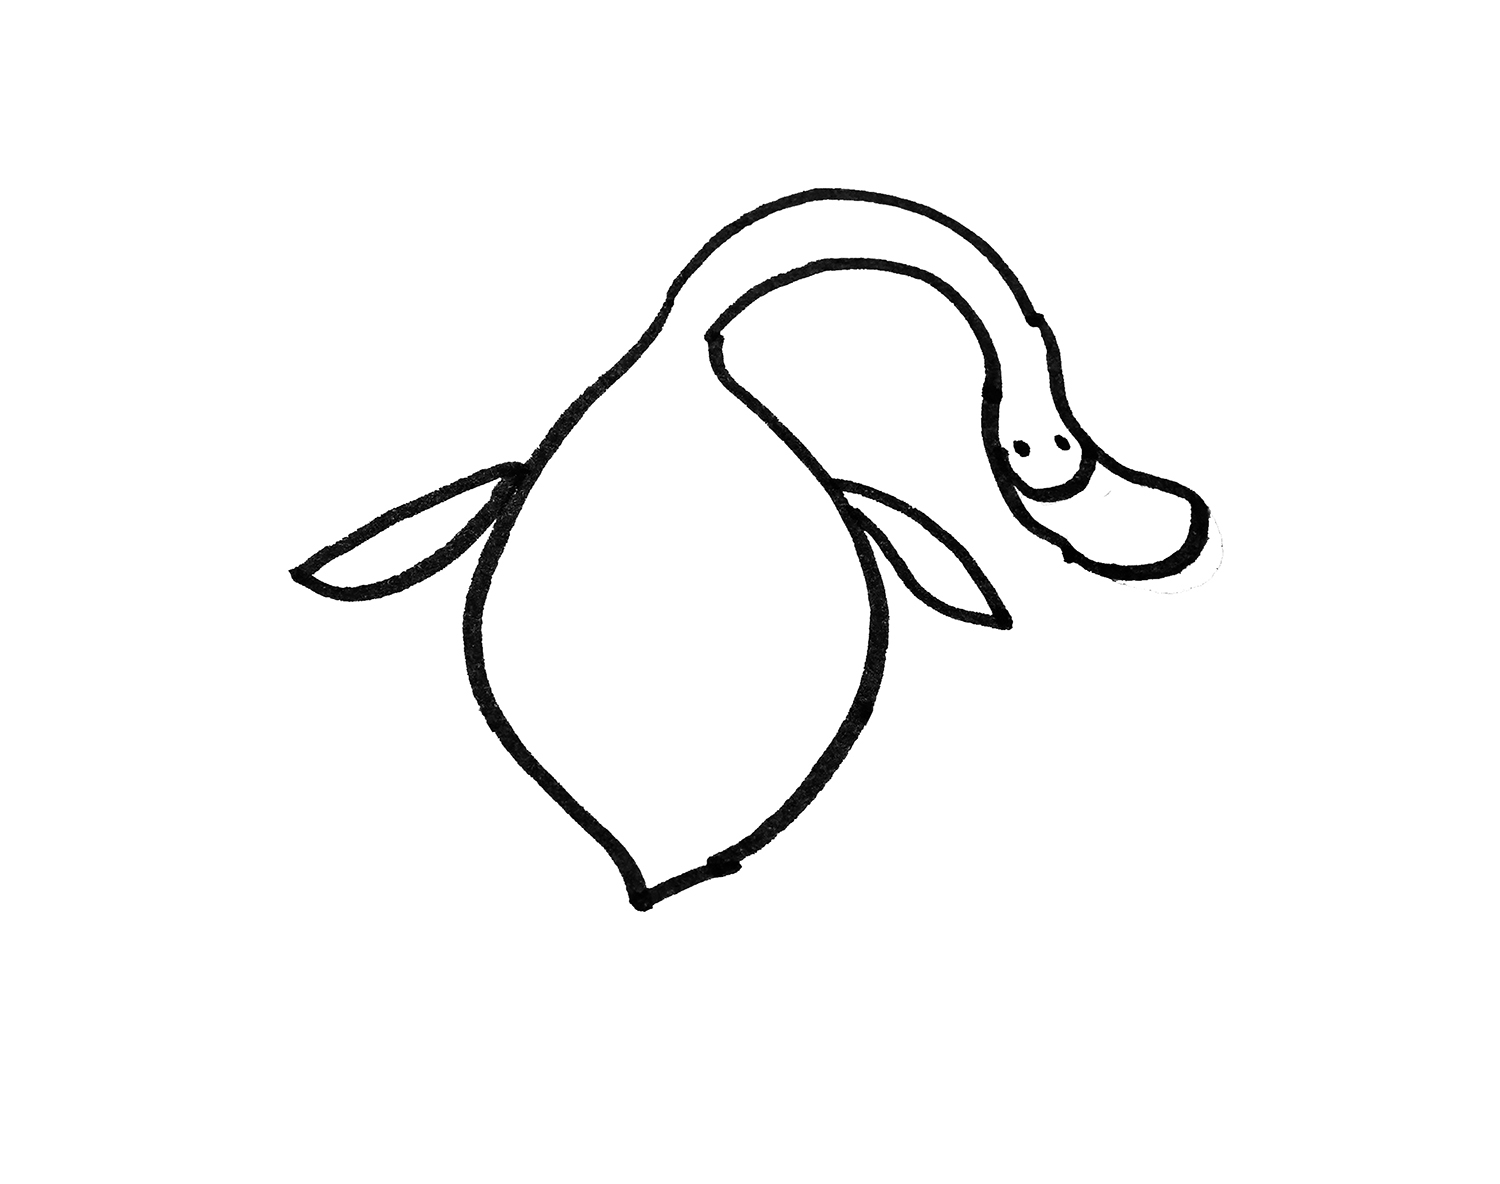 教你画色彩小鸭子的画法步骤教程 可爱简笔画